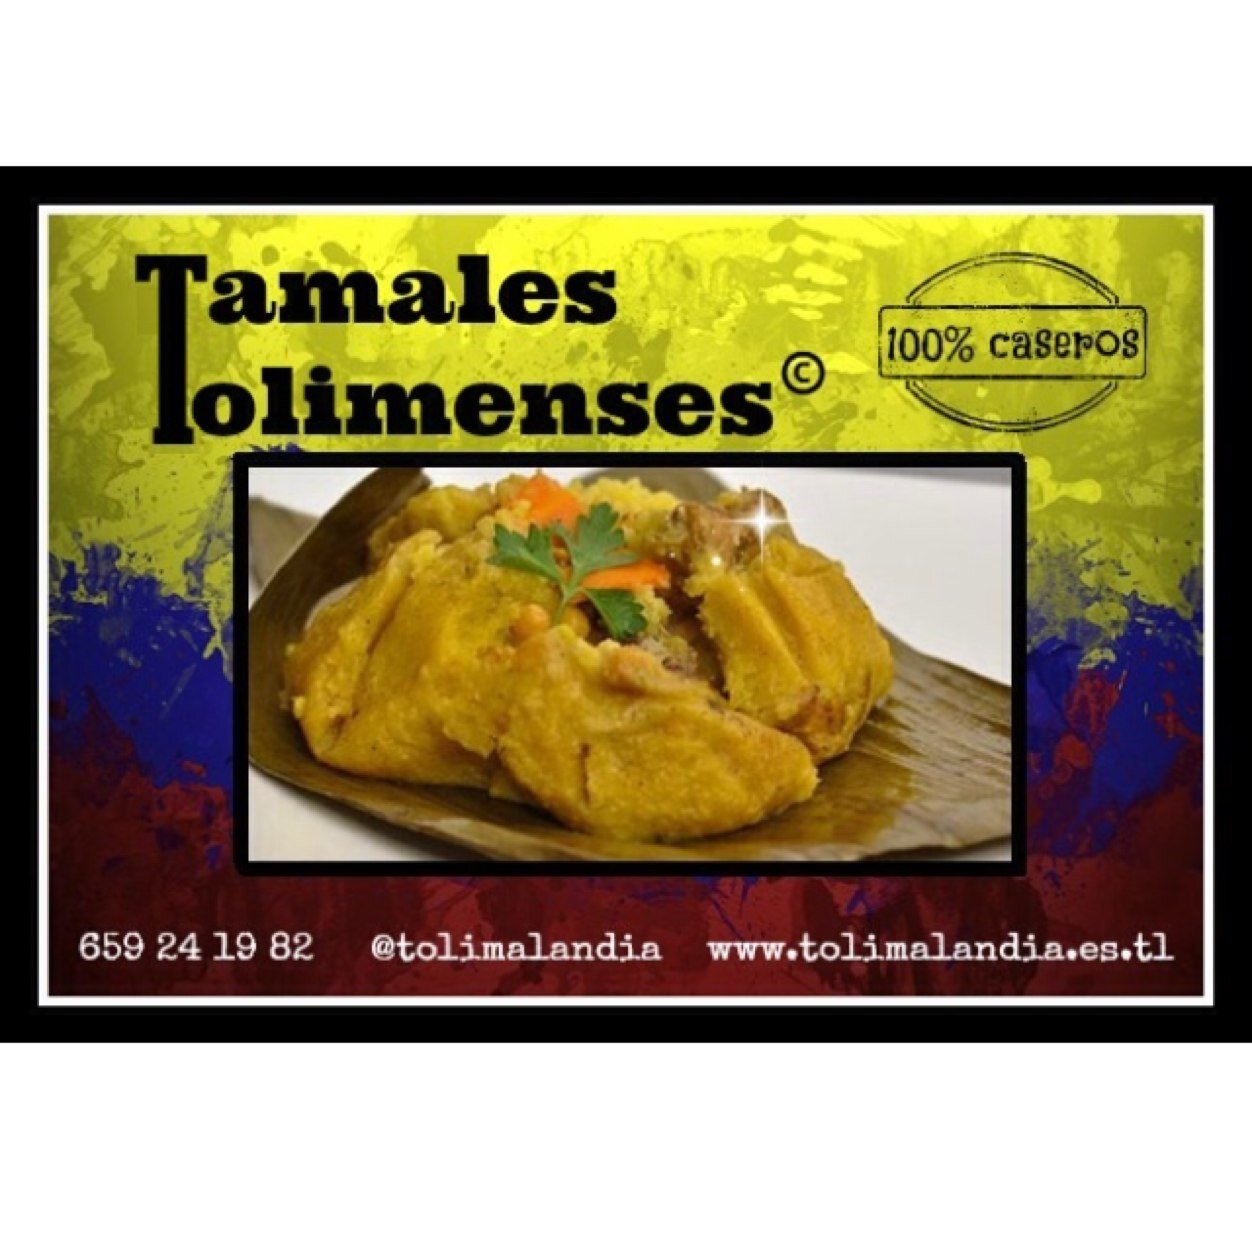 Deliciosos Tamales Tolimenses, económicos, 100% caseros y con ingredientes de 1ª calidad. Servicio a domicilio gratis en Madrid. 659 24 19 82